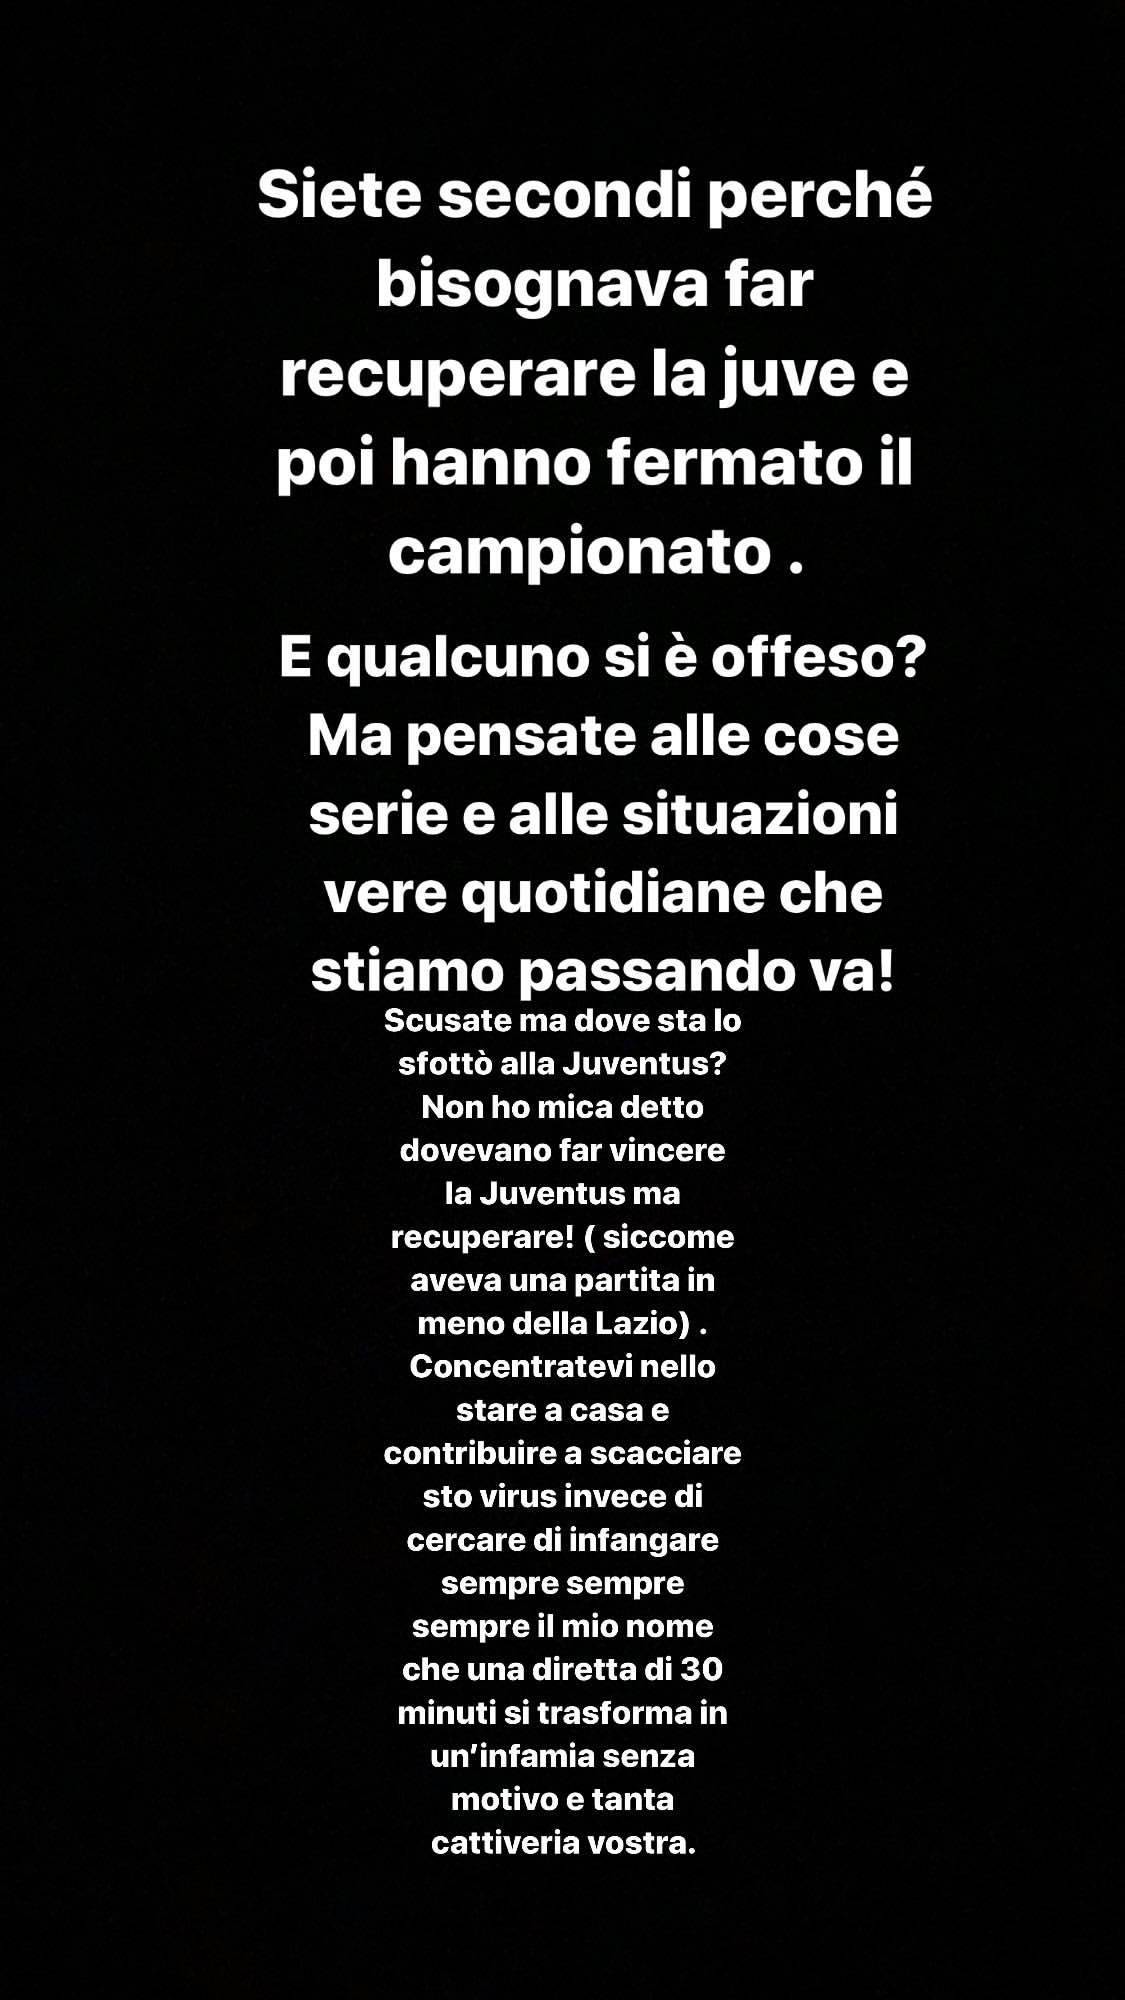 La difesa di Balotelli su Instagram